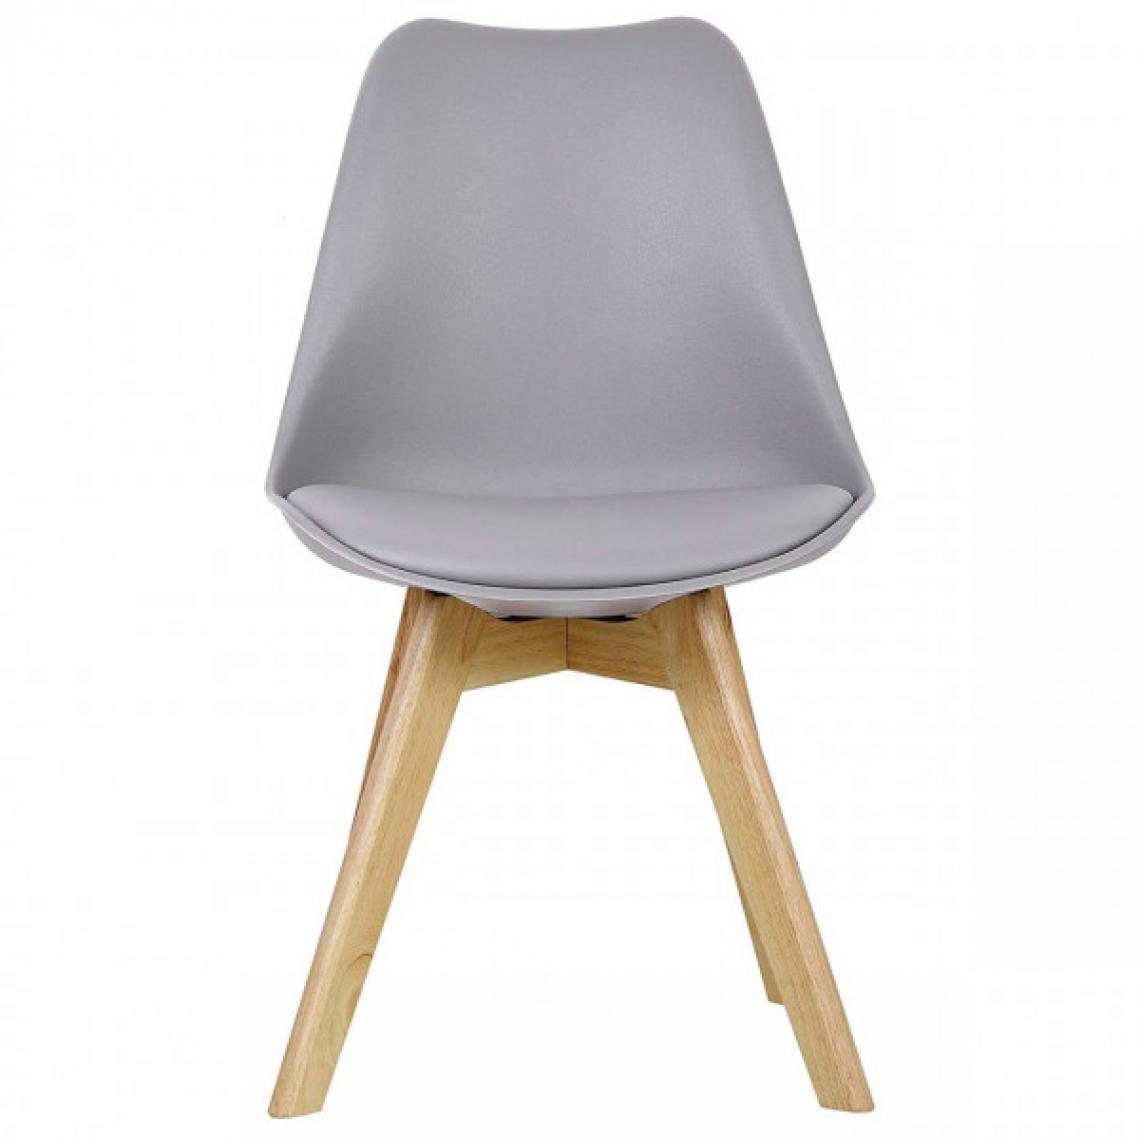 MercatoXL - Salle à manger cuir artificiel chaise en bois gris pieds - Tables à manger